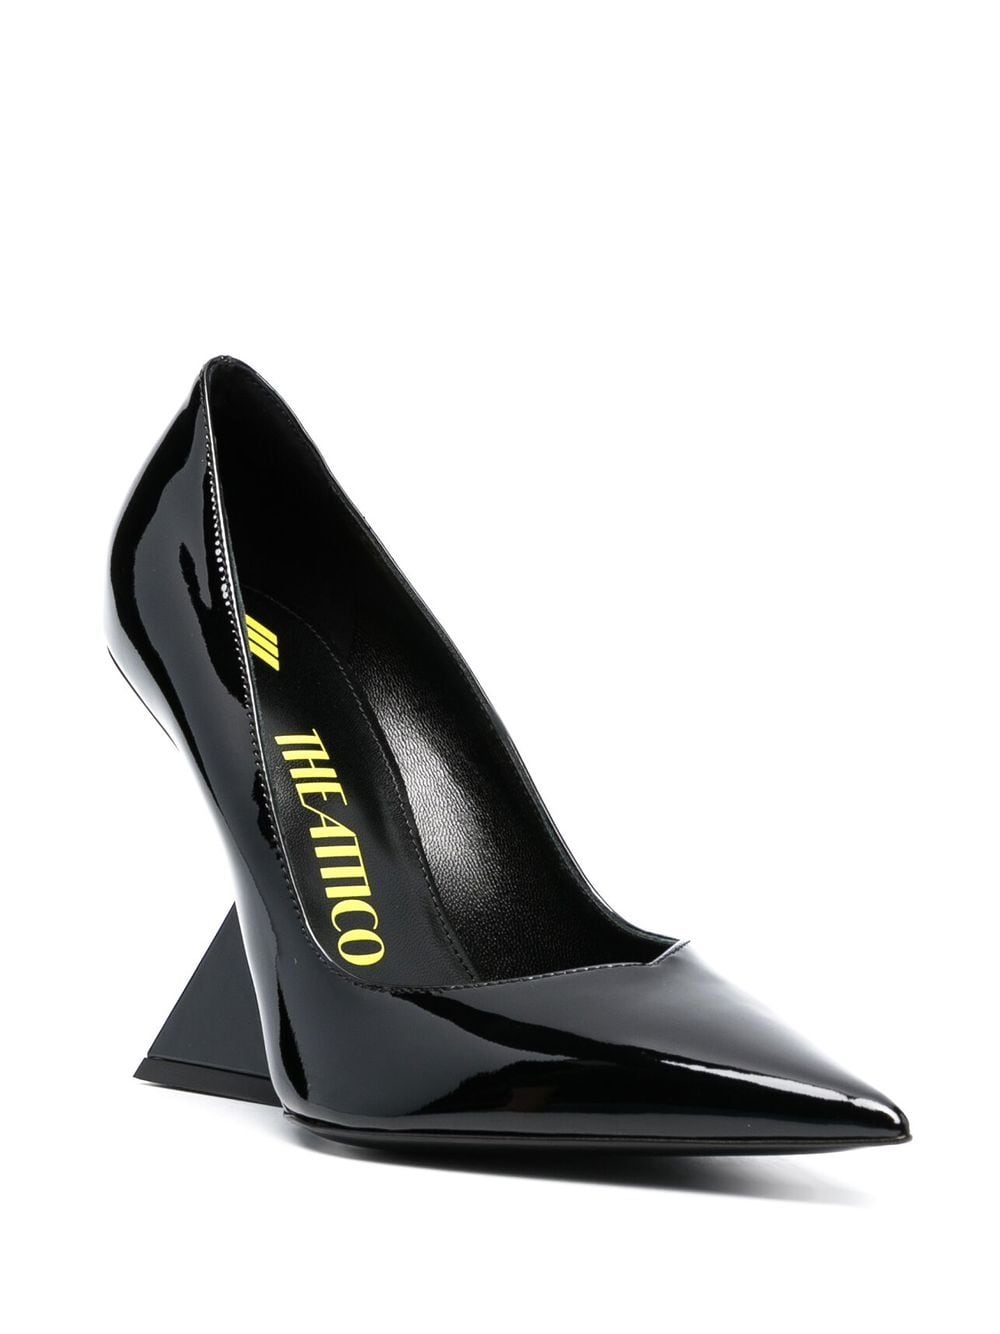 黑色真皮高跟鞋-105mm鞋跟-女性秋冬'23系列